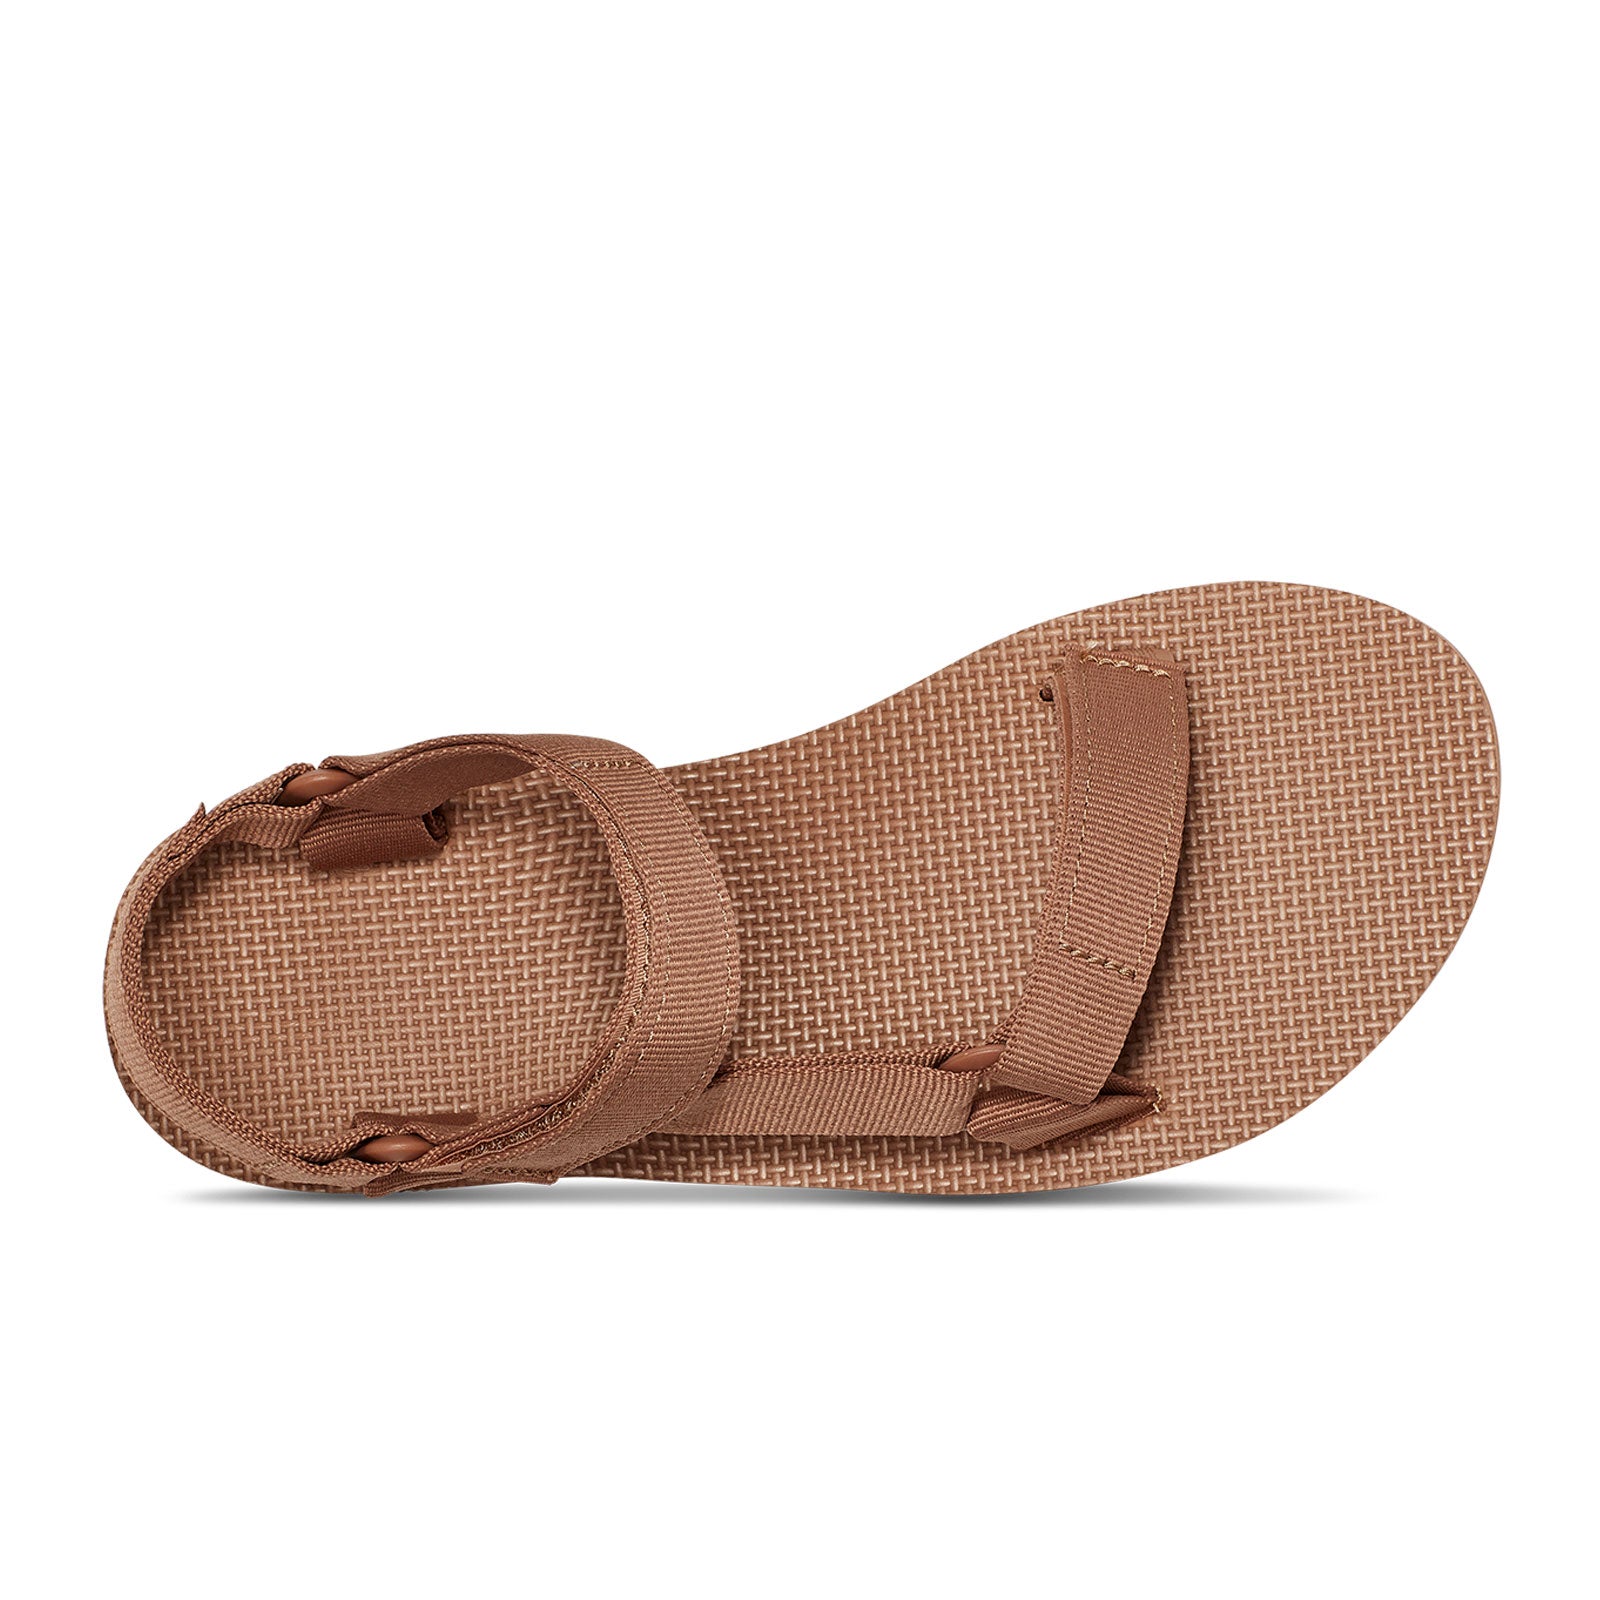 Teva Original Active Sandal (Women) - Dune - The Heel Shoe Fitters